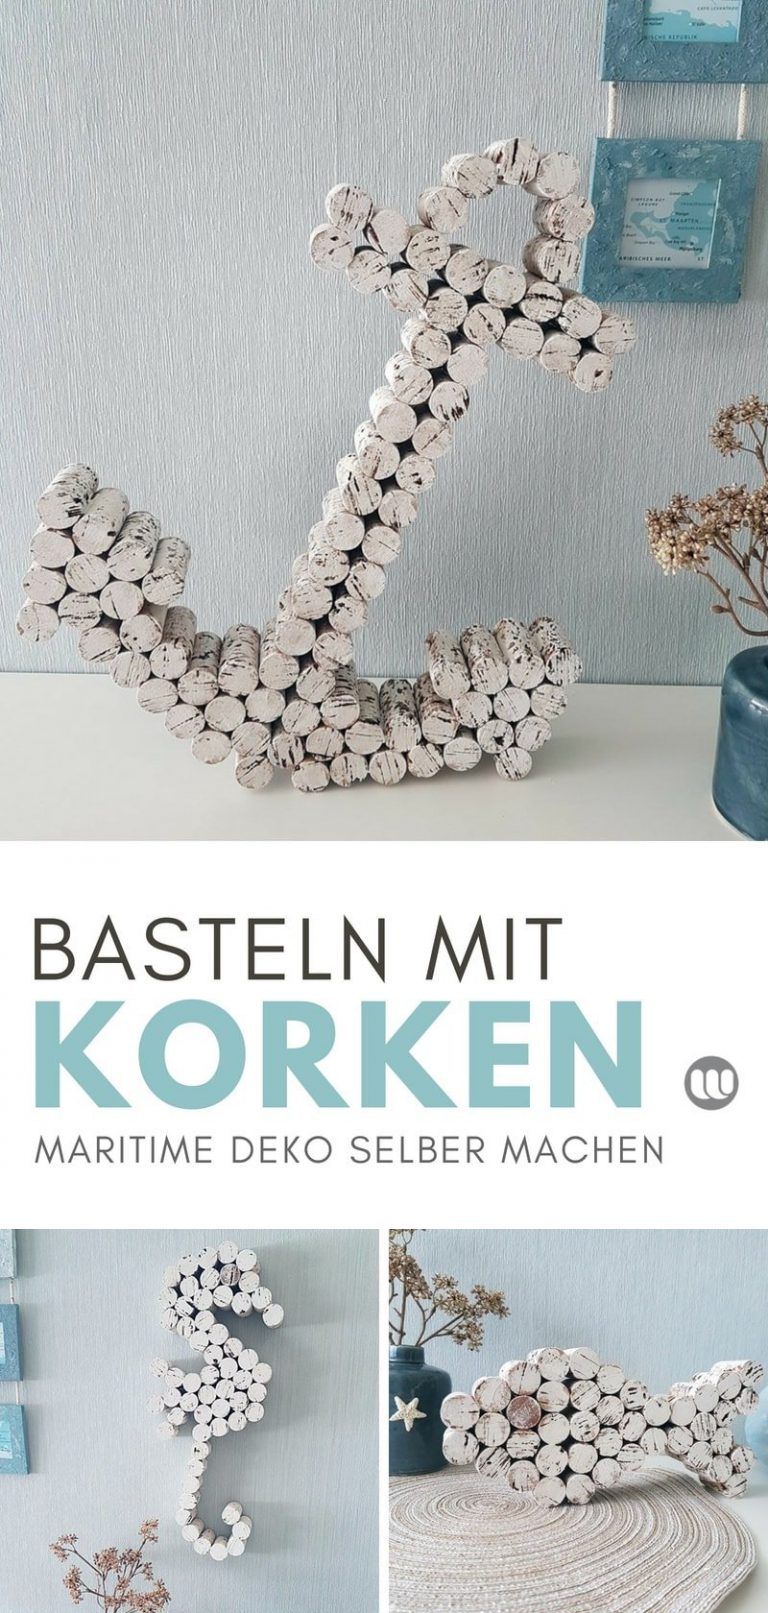 Selbstgemachte Deko Schön Anker Basteln Mit Korken Maritime Dekoration Selbstgemacht